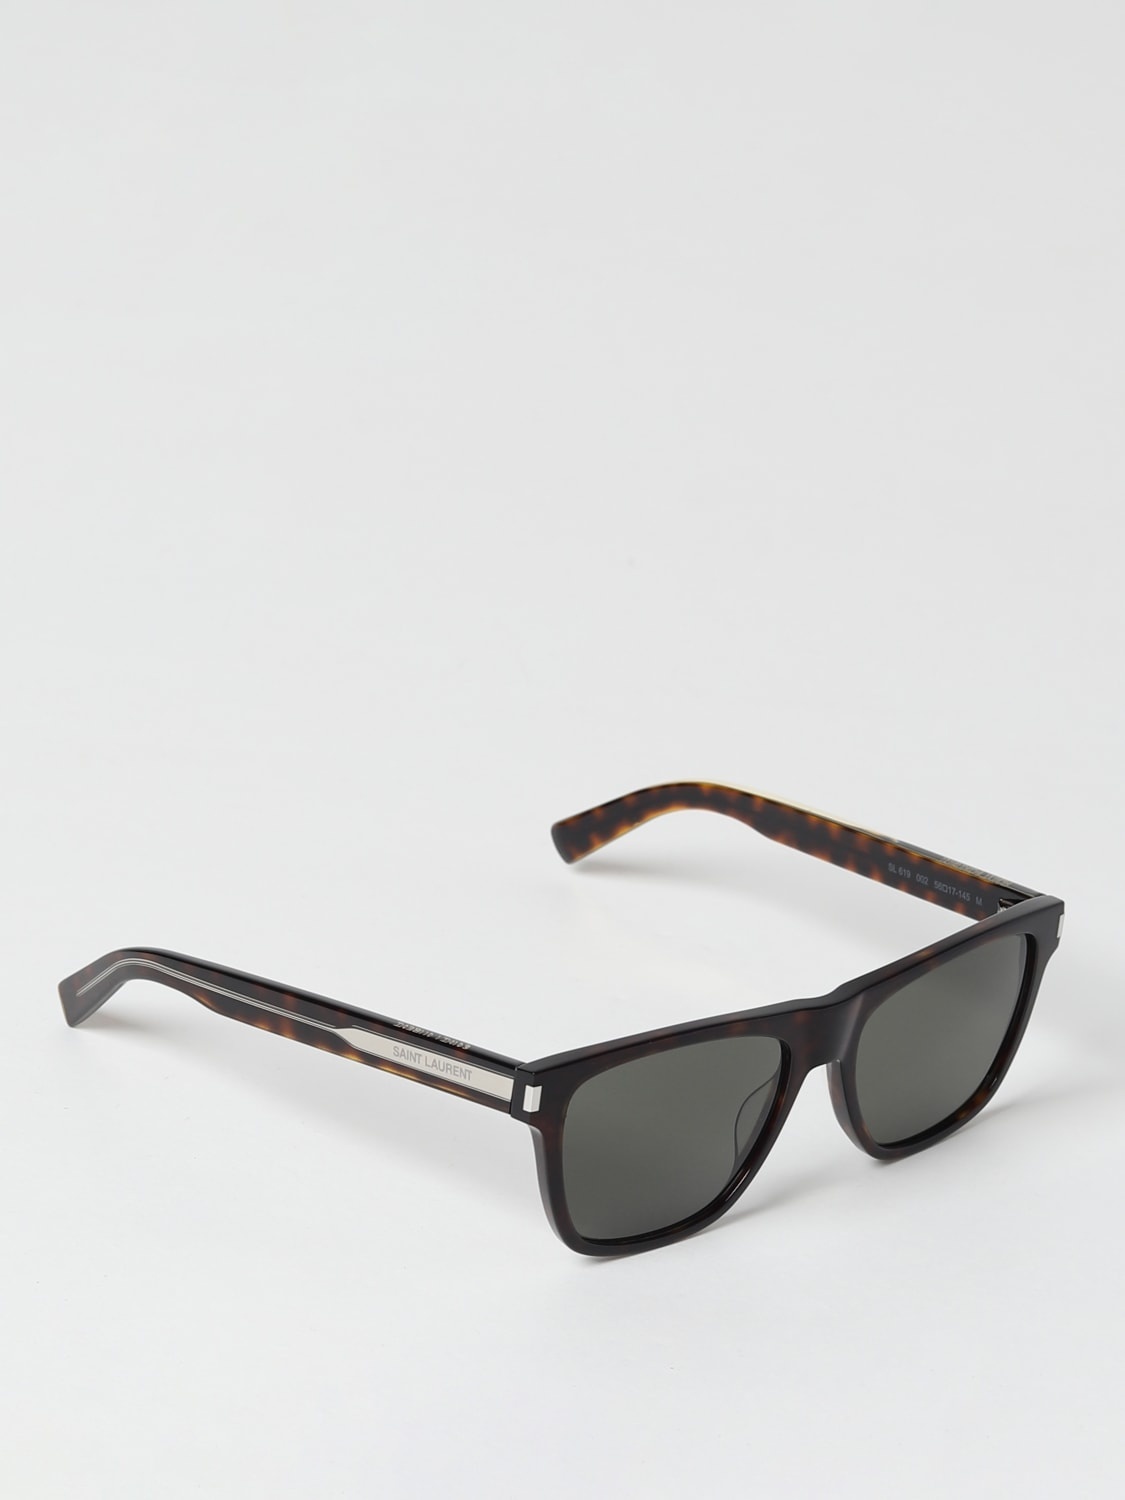 Saint Laurent sunglasses in acetate - 1